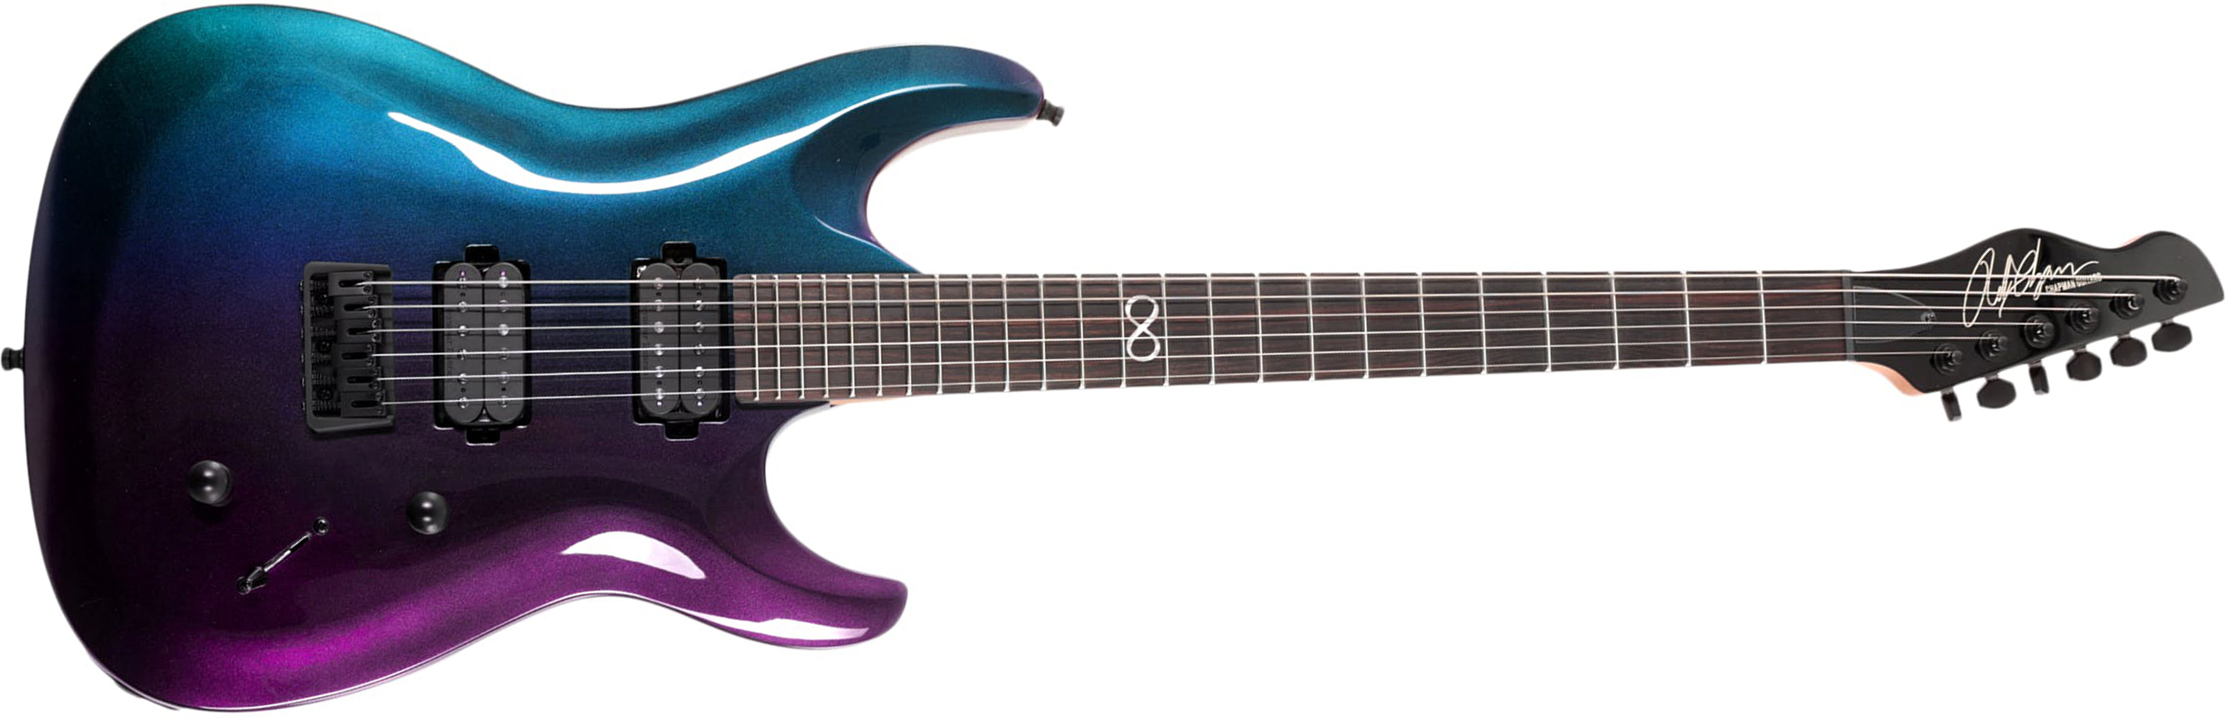 Chapman Guitars Ml1 Modern Pro 2h Seymour Duncan  Ht Eb - Morpheus Purple Flip - Guitarra eléctrica con forma de str. - Main picture